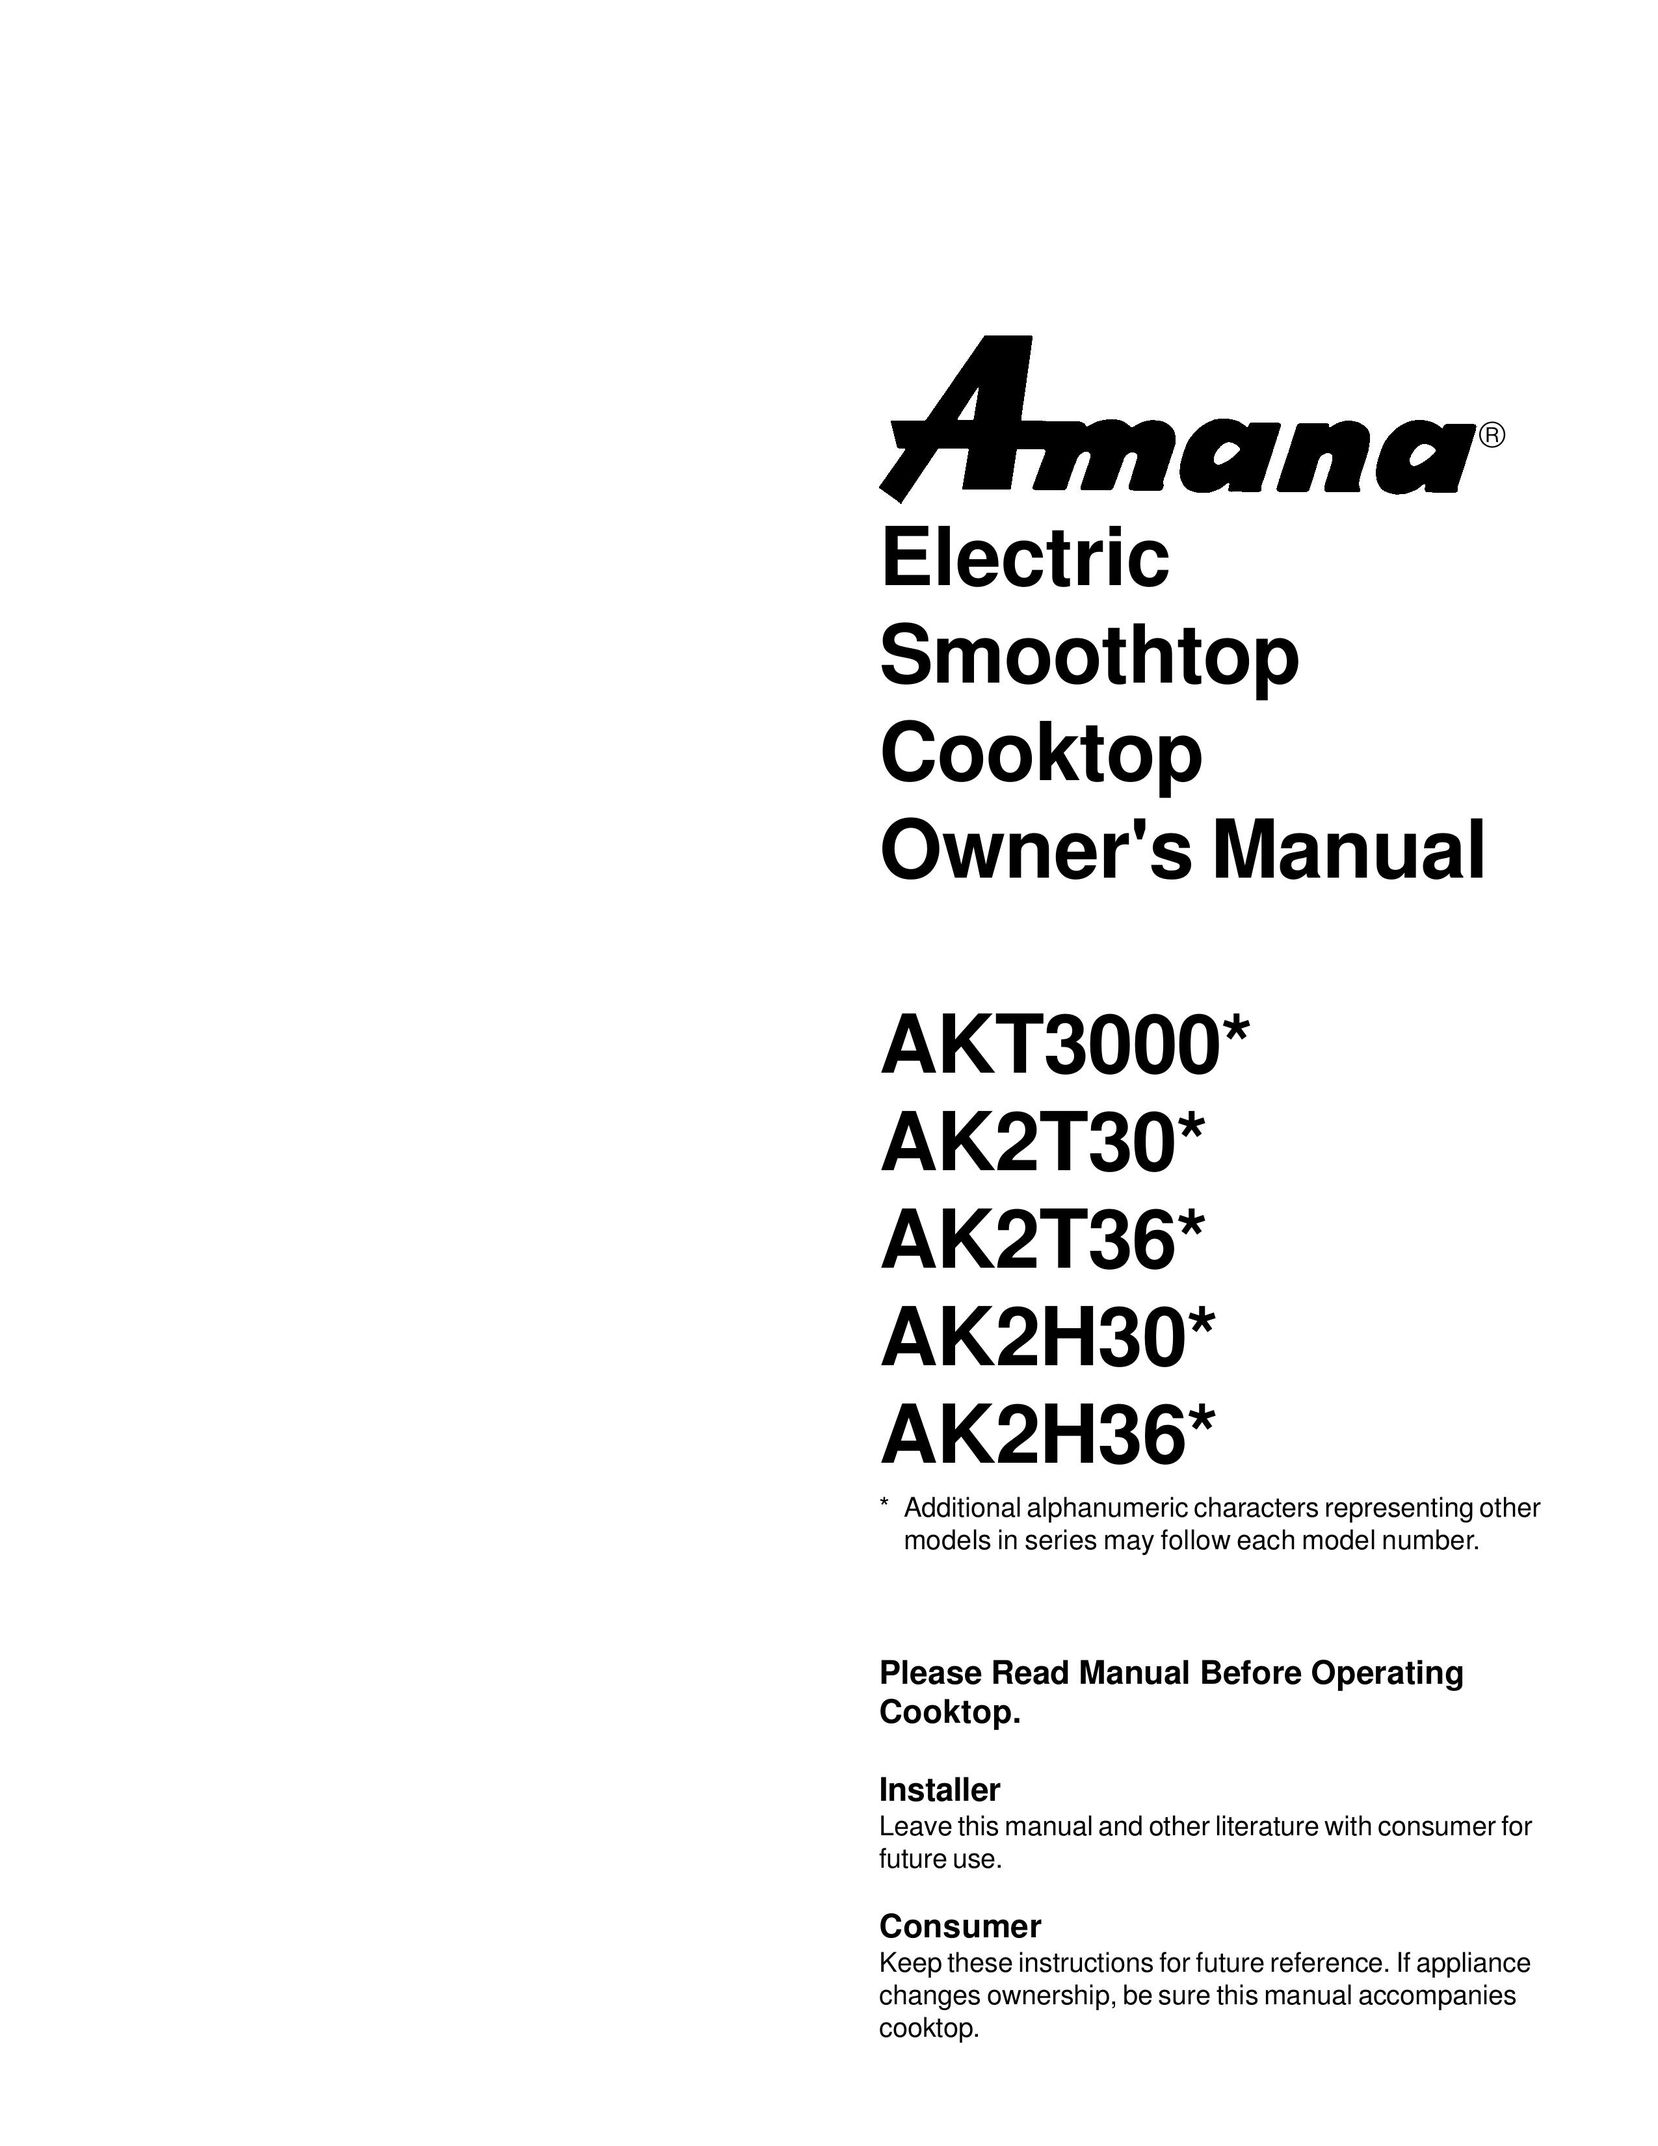 Amana AK2H36 Cooktop User Manual